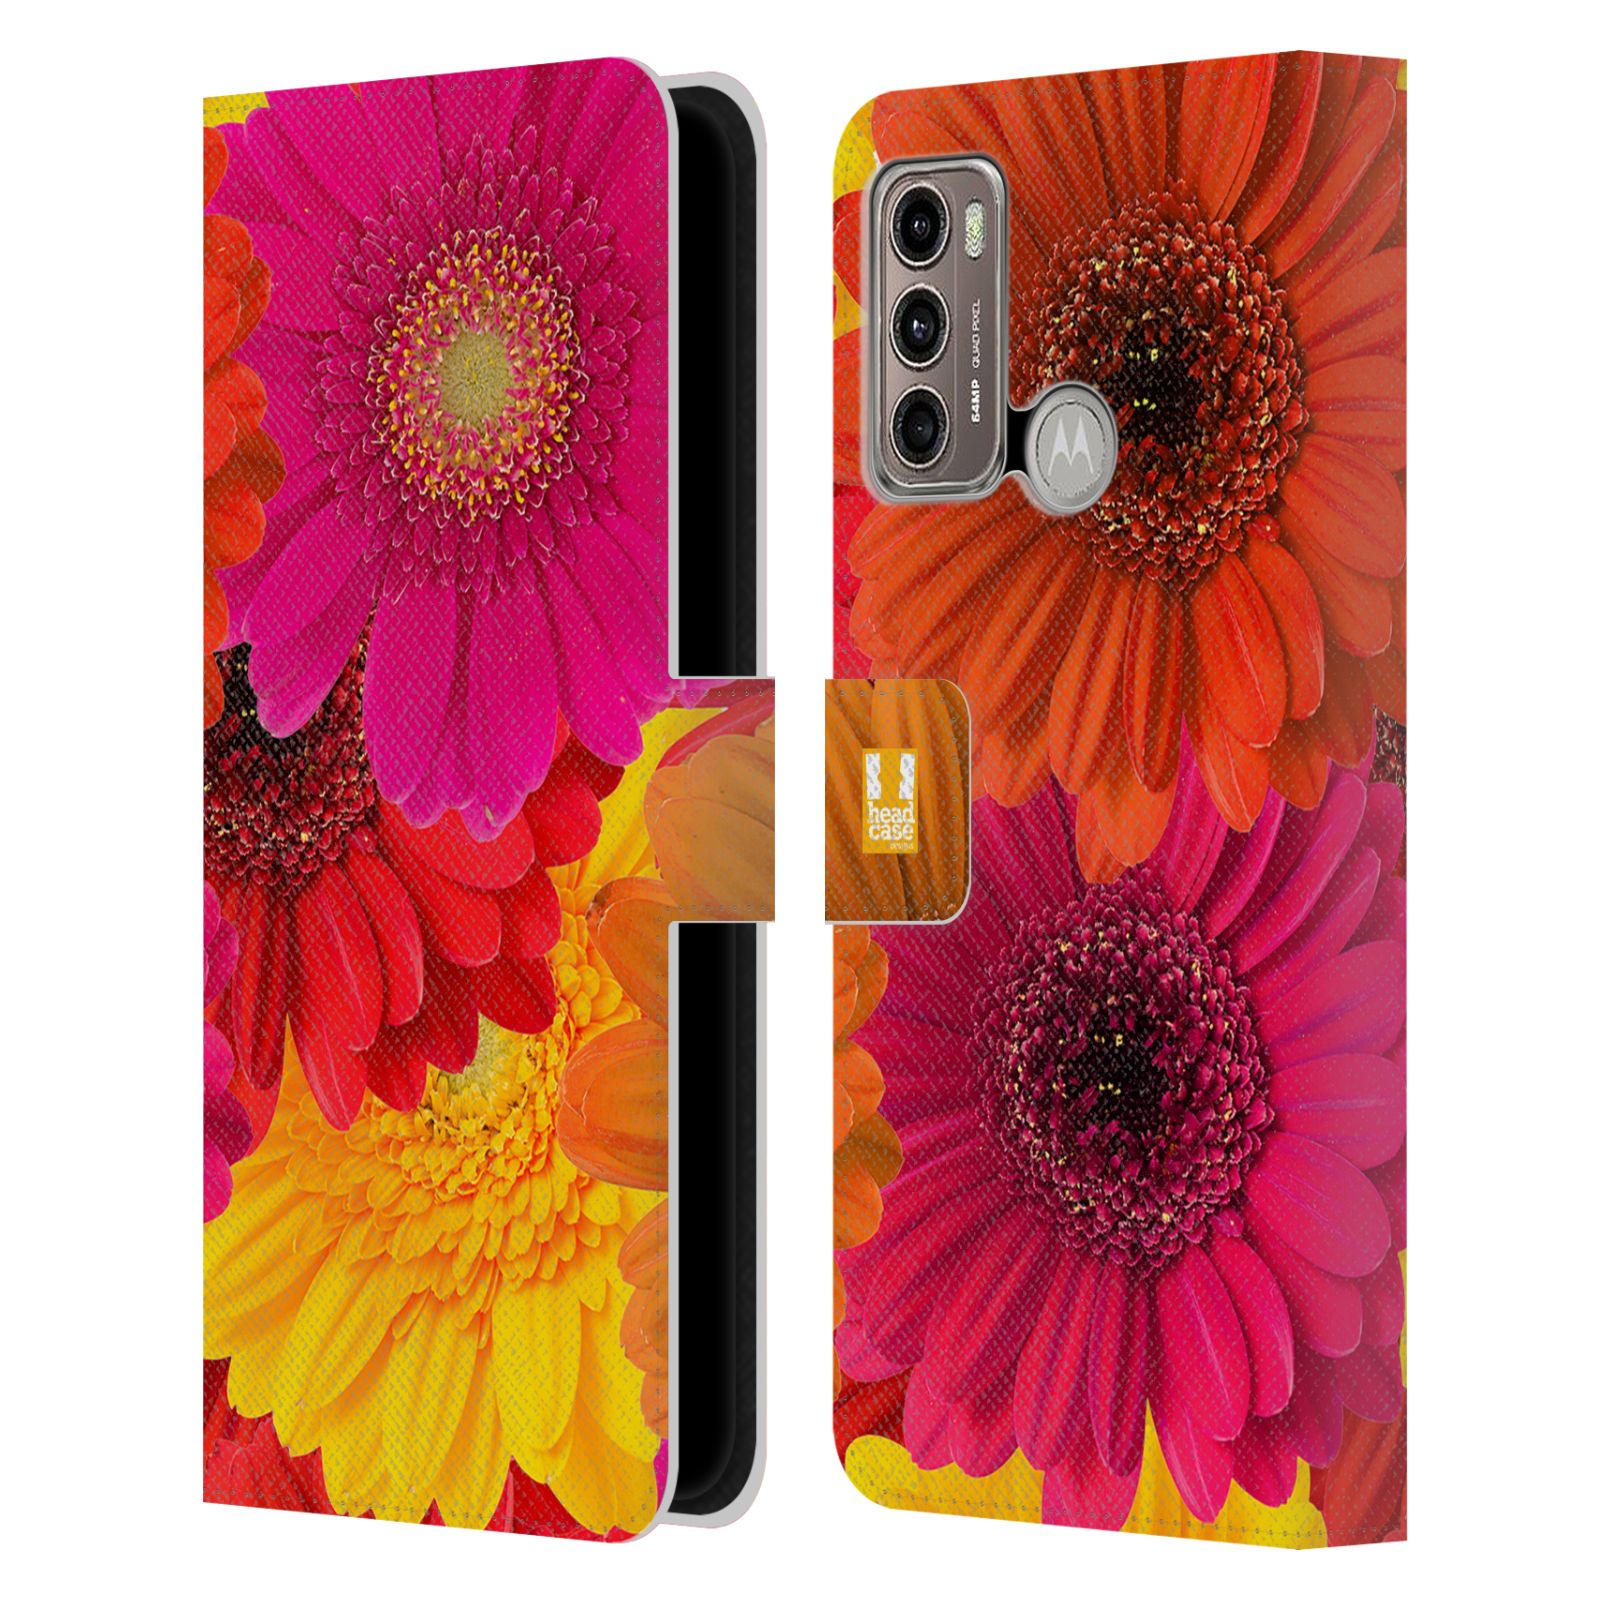 Pouzdro HEAD CASE na mobil Motorola Moto G60 květy foto fialová, oranžová GERBERA